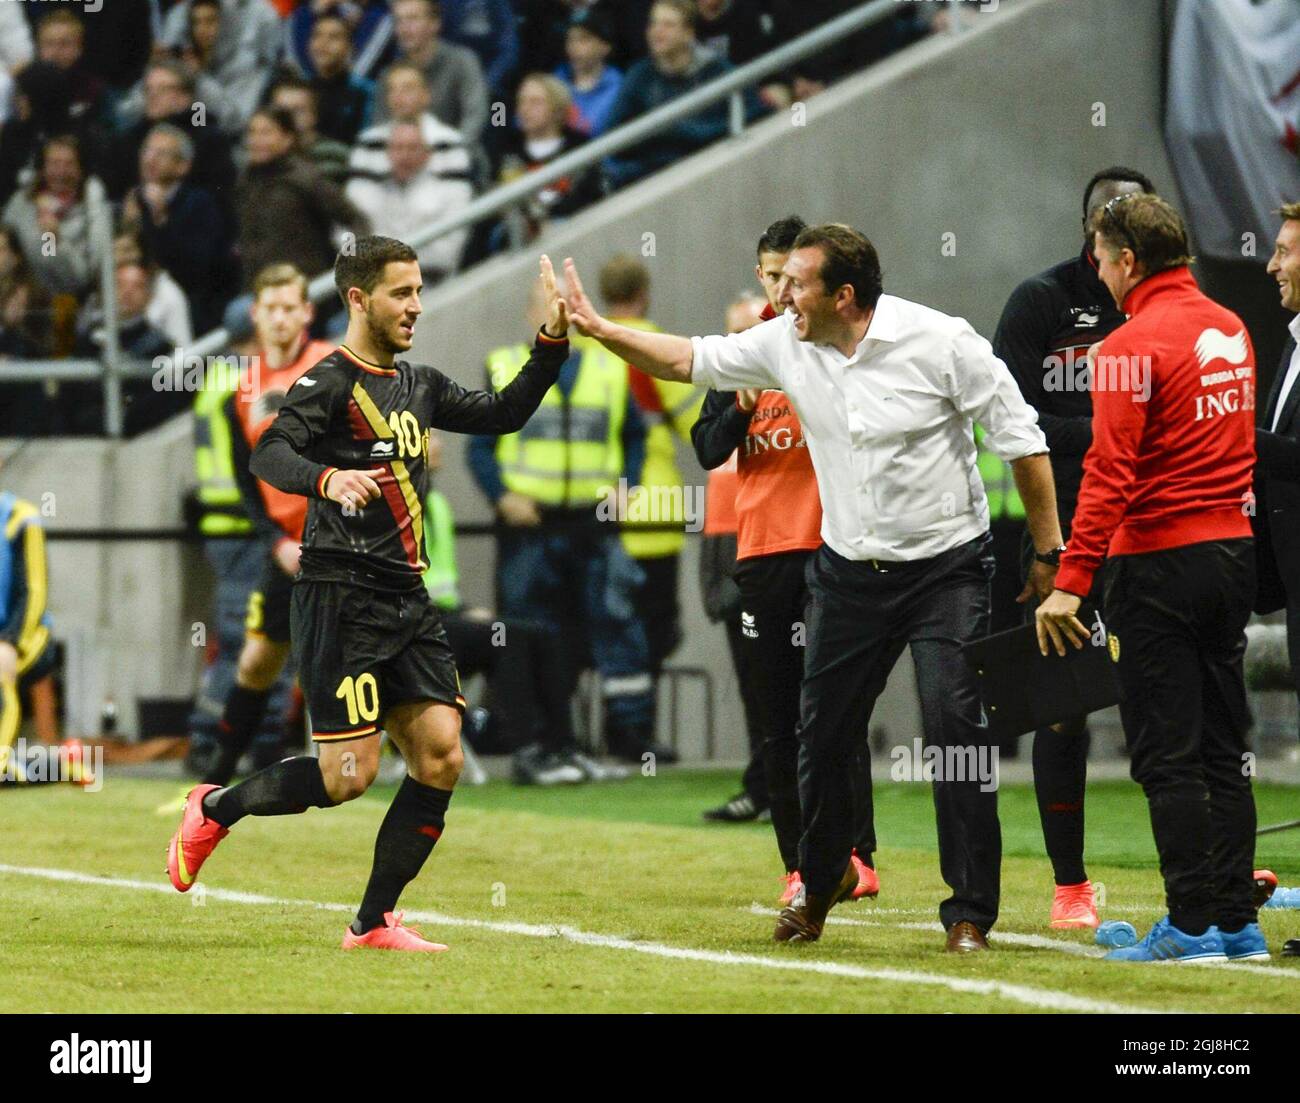 L'Eden Hazard de Belgique, à gauche, obtient un haut cinq de l'entraîneur Marc Wilmot après le but de Hazard 0-2 dans le match de football amical entre la Suède et la Belgique à Friends Arena à Solna, Suède, dimanche 1er juin 2014. Banque D'Images